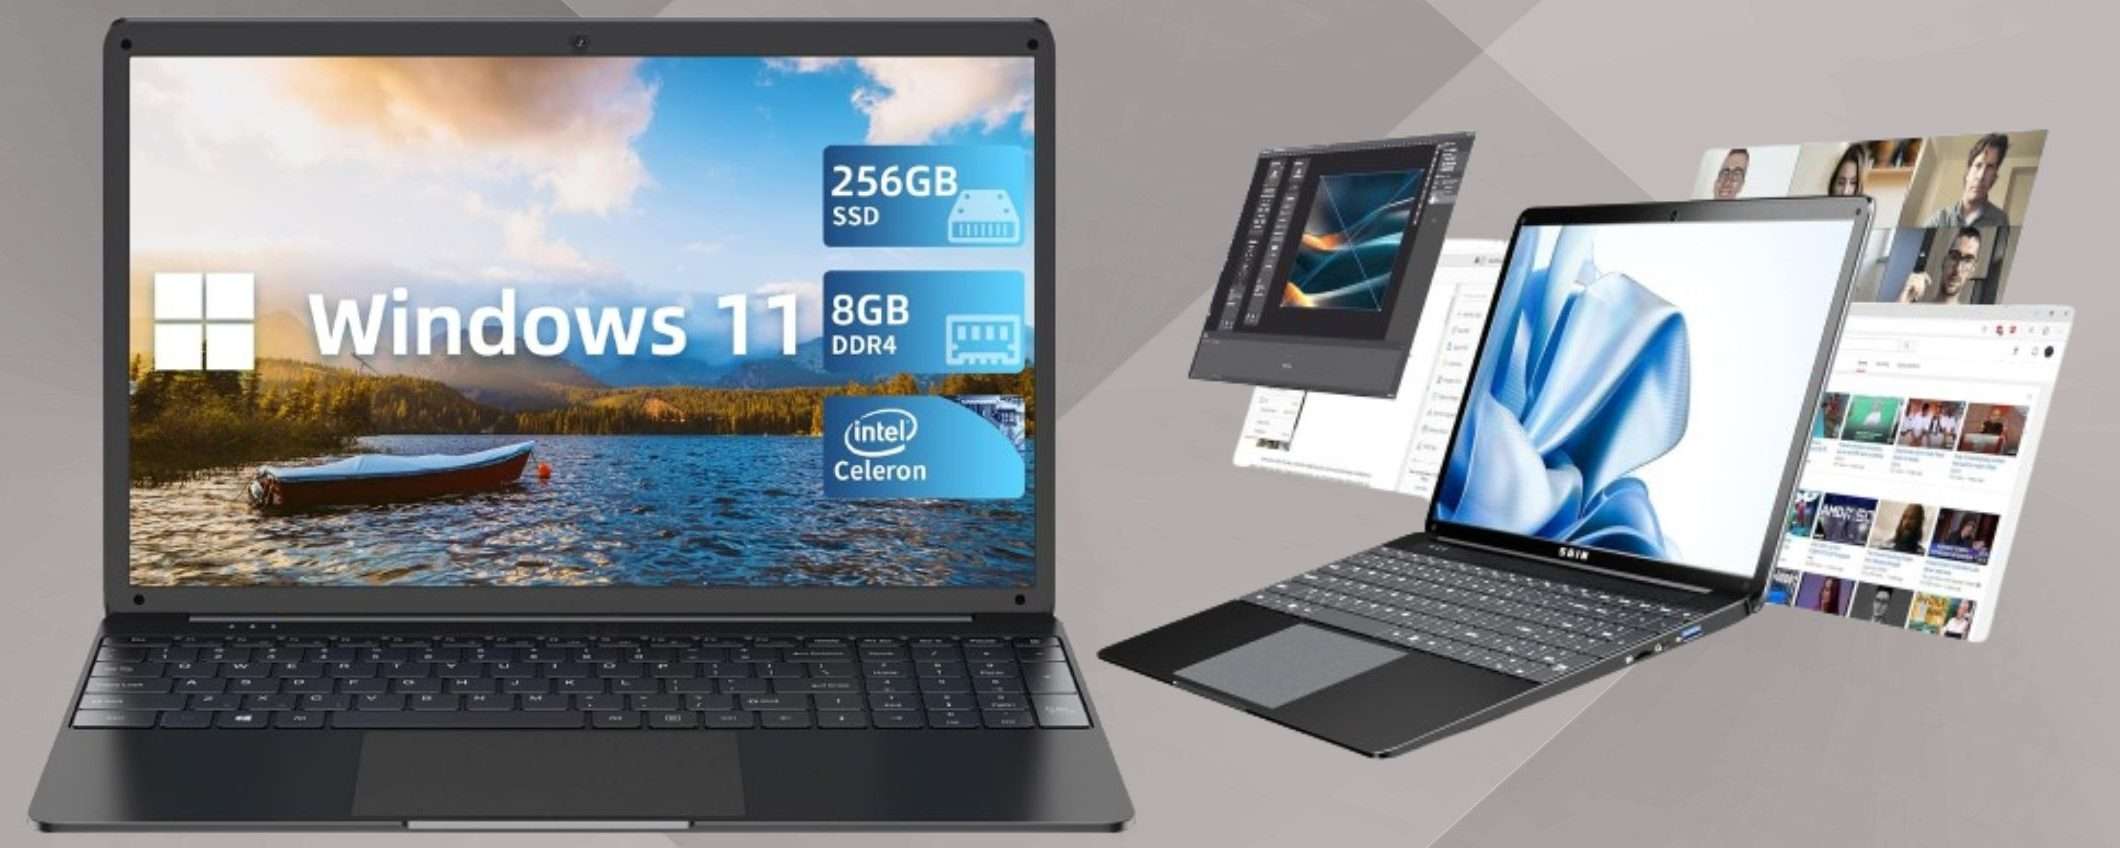 PC portatile STRAORDINARIO a 239€: chip Intel, RAM 8GB e SSD 256GB